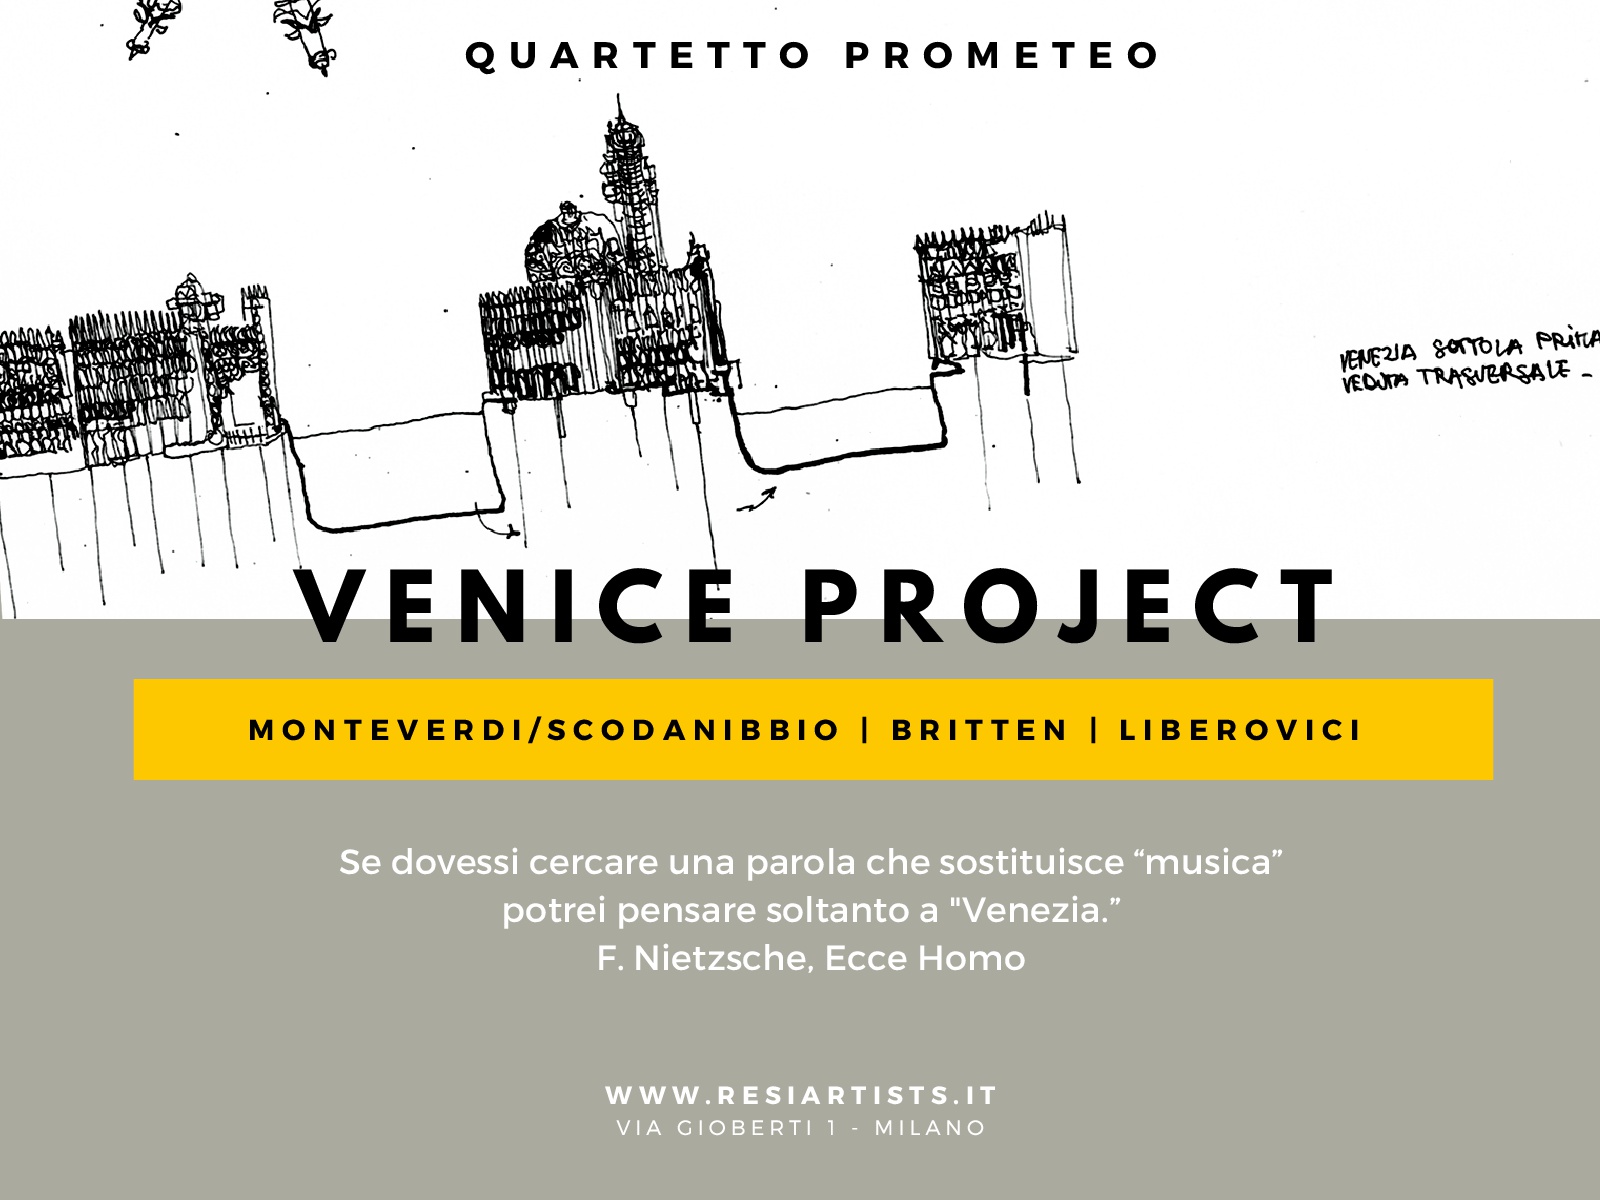 Venice Project